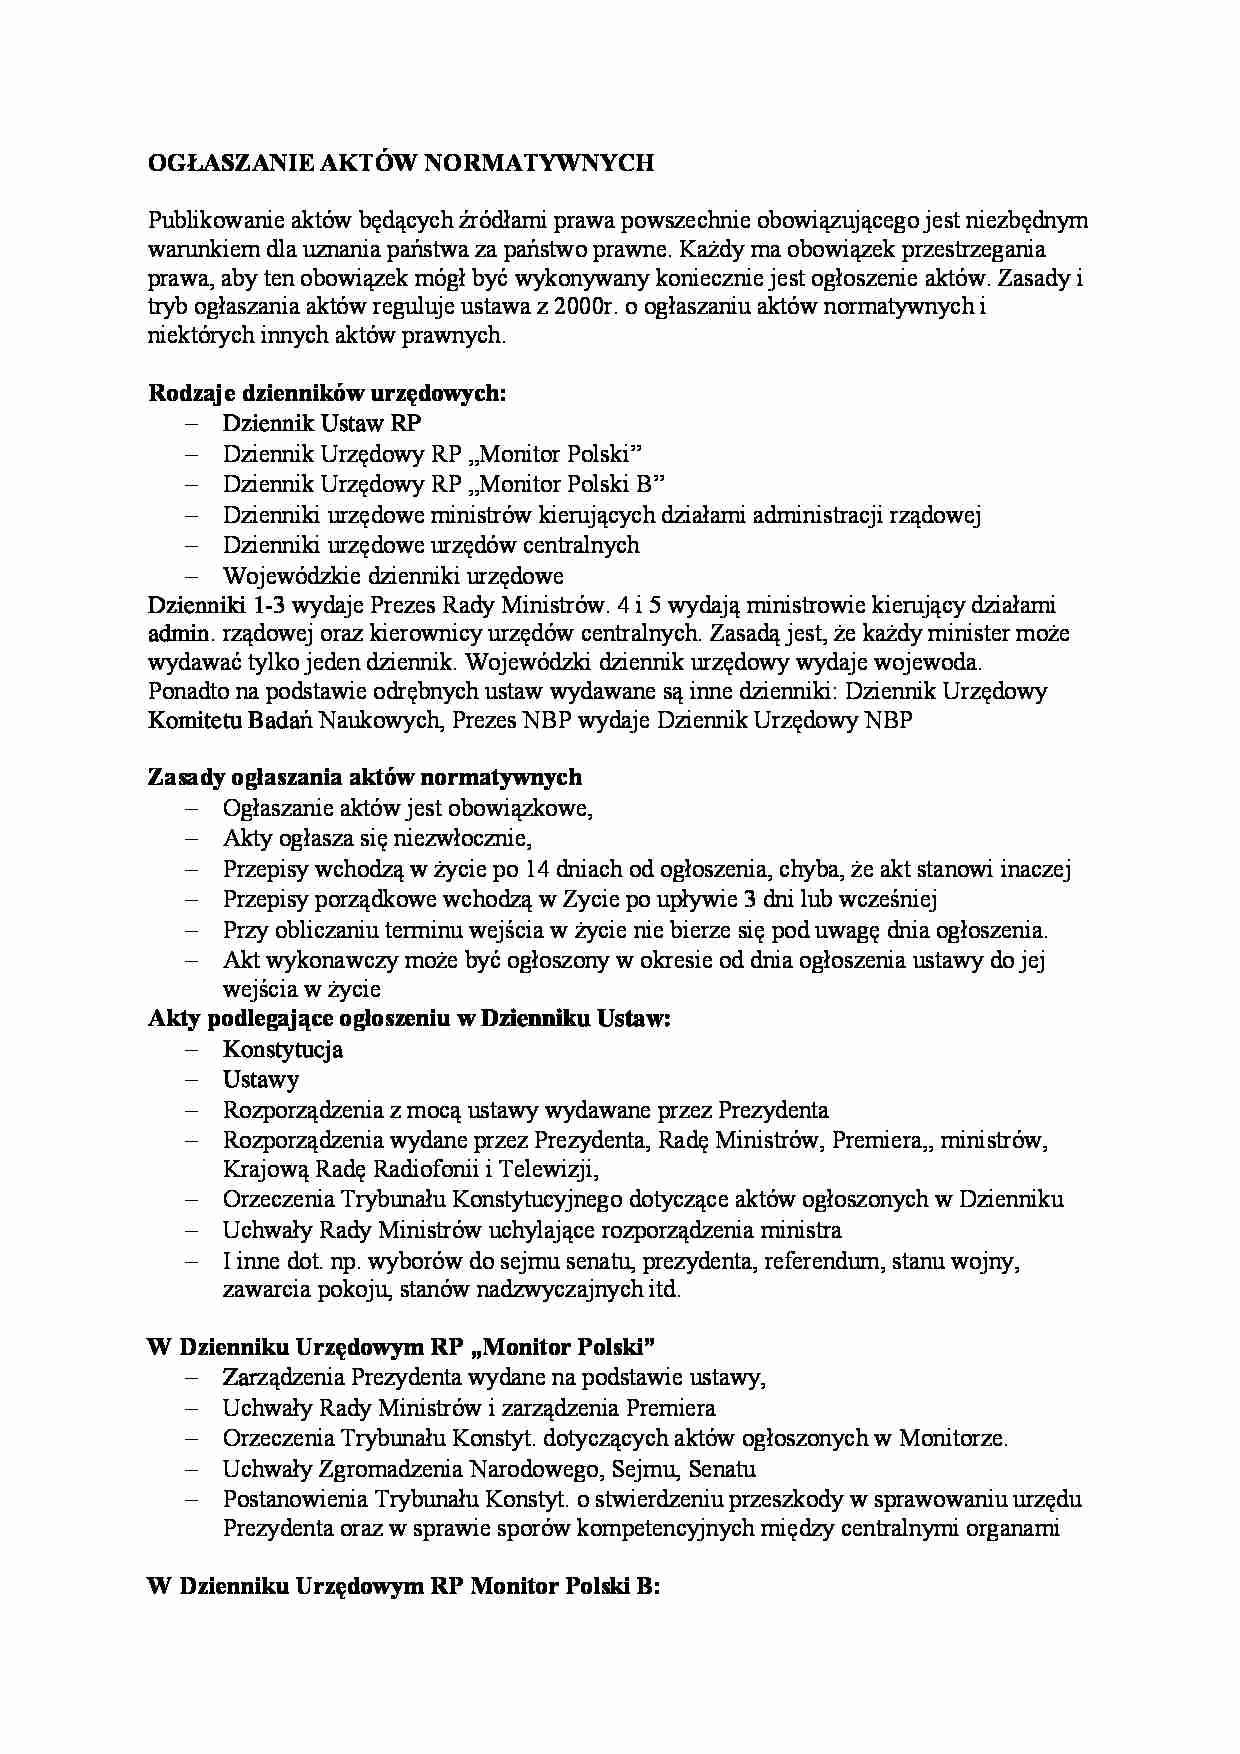 Ogłaszanie aktów normatywnych -  Wojewódzki dziennik urzędowy - strona 1